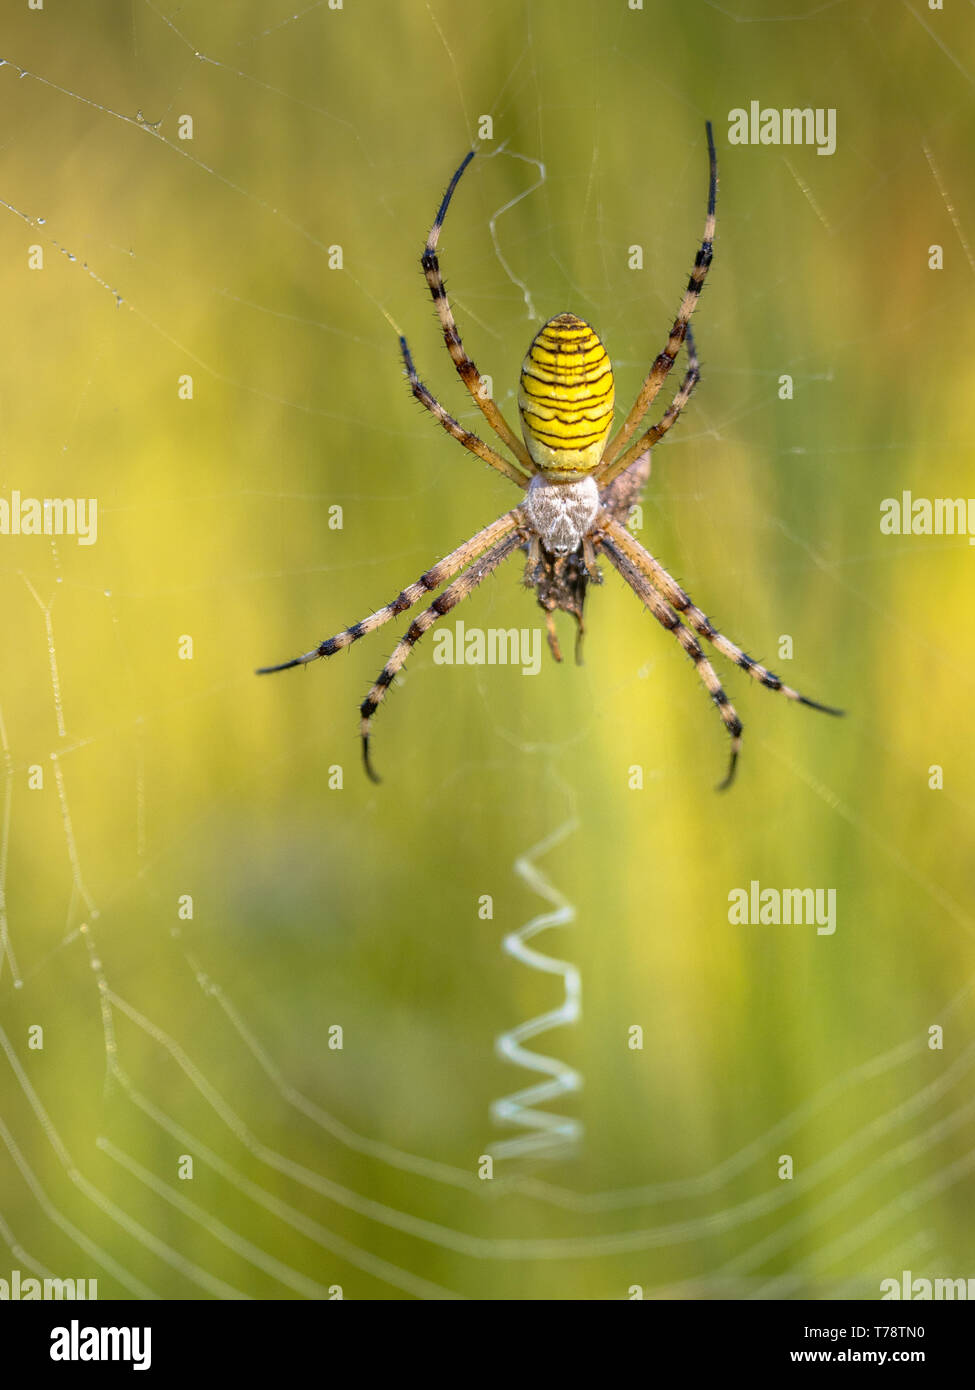 Wasp spider (Argiope bruennichi) in attesa di preda nel web. Close up Foto Stock